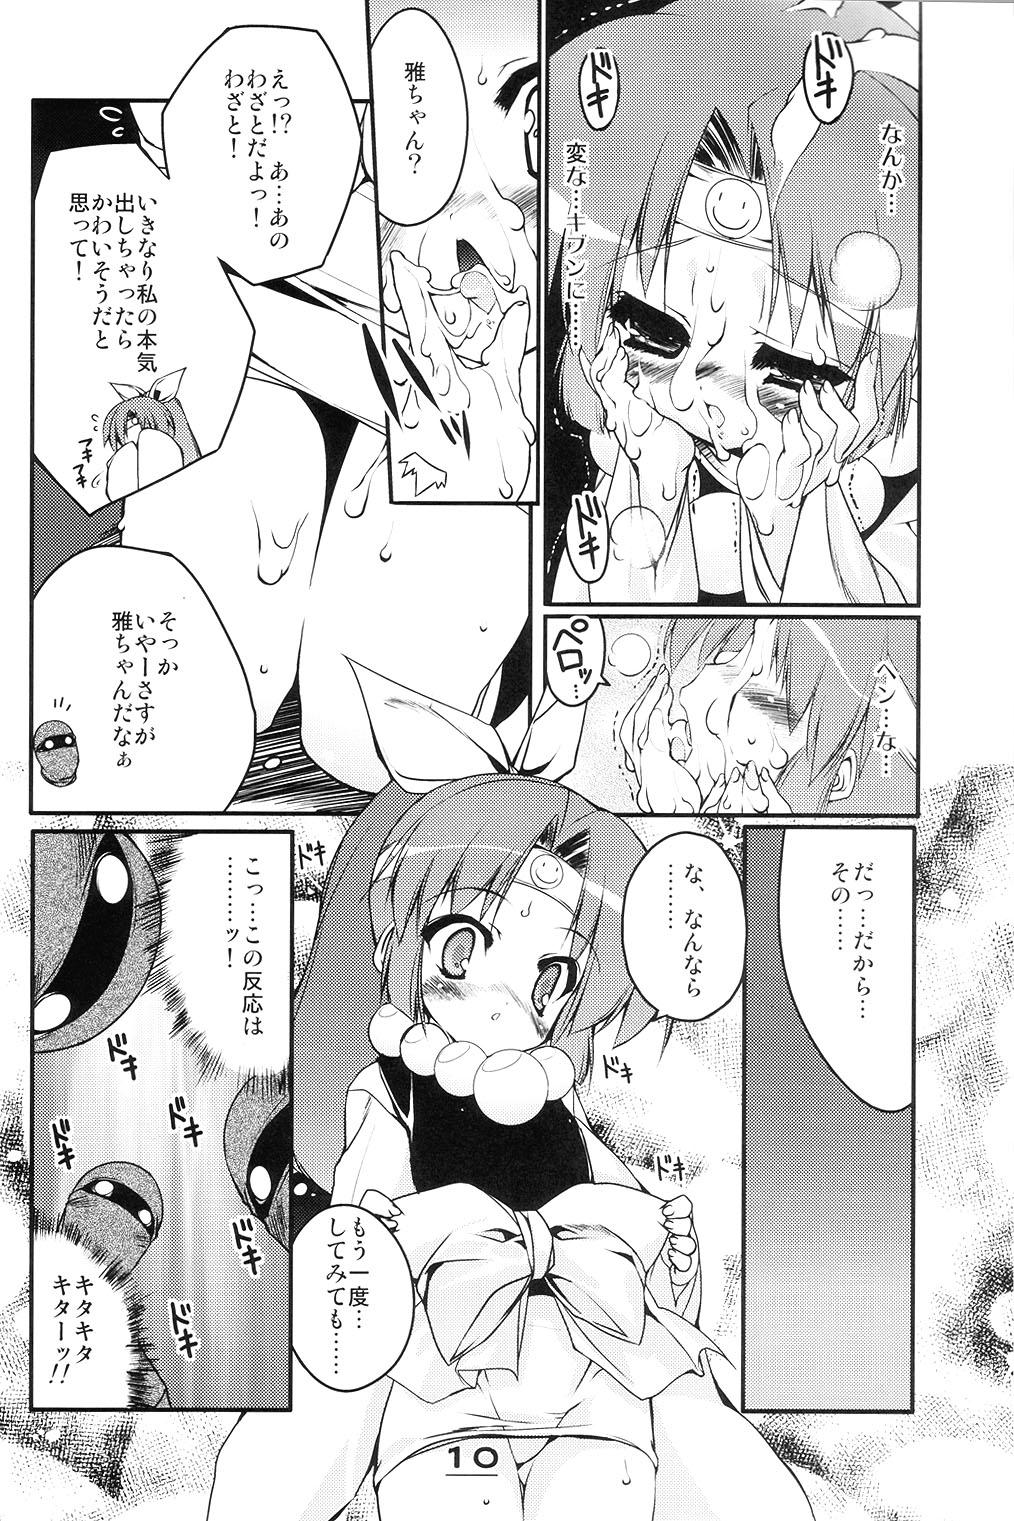 Celebrity Sex Momoiro Ninpou Hidensho - 2x2 shinobuden Punheta - Page 9